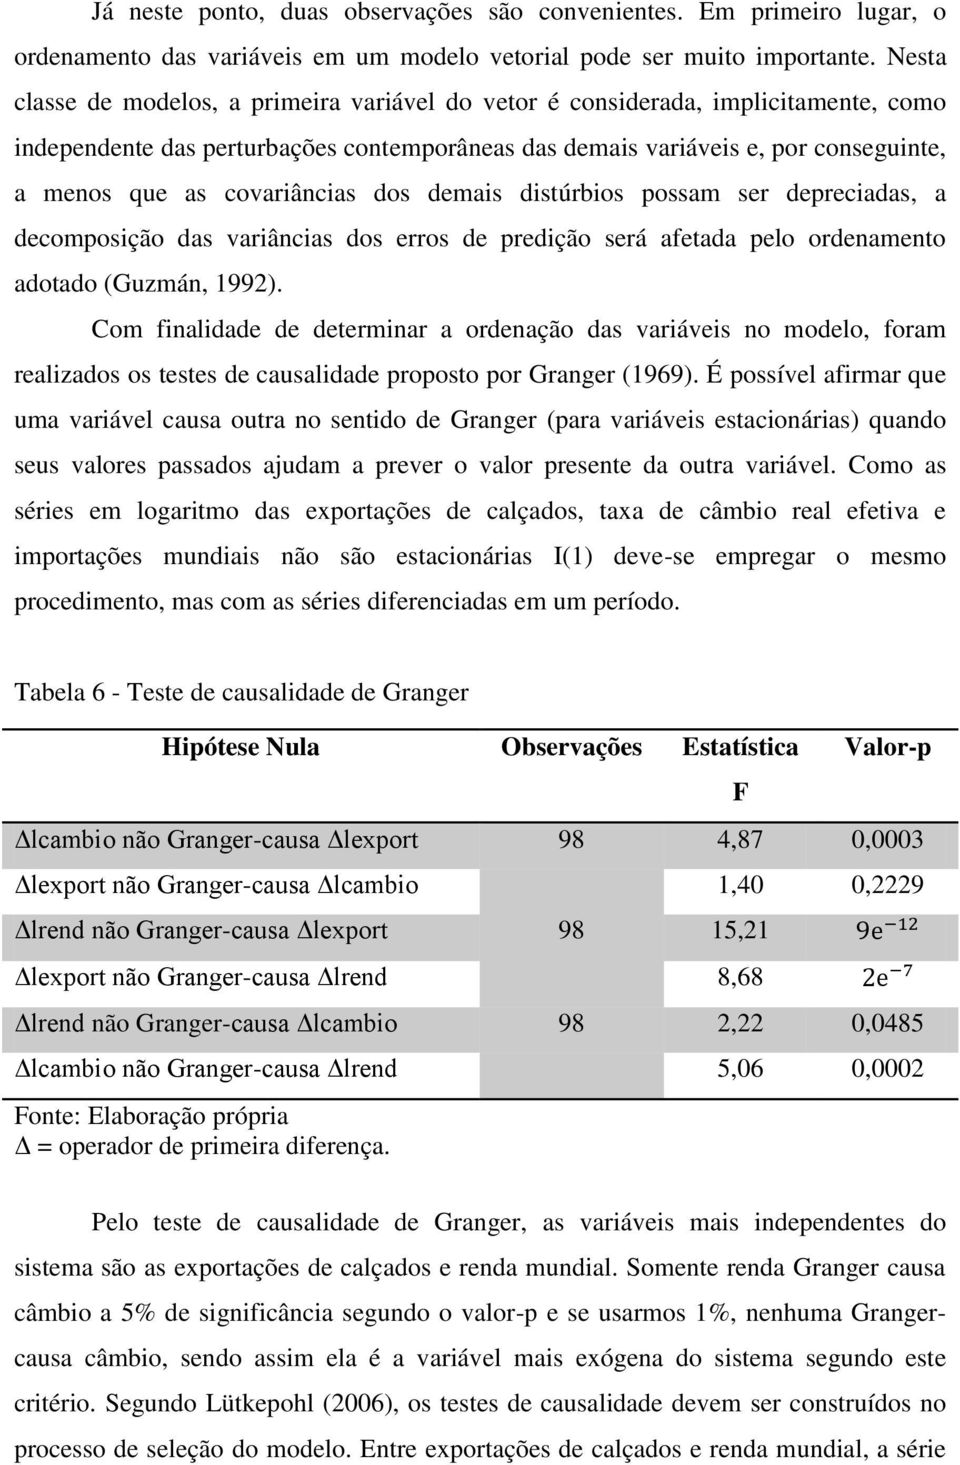 covariâncias dos demais distúrbios possam ser depreciadas, a decomposição das variâncias dos erros de predição será afetada pelo ordenamento adotado (Guzmán, 1992).